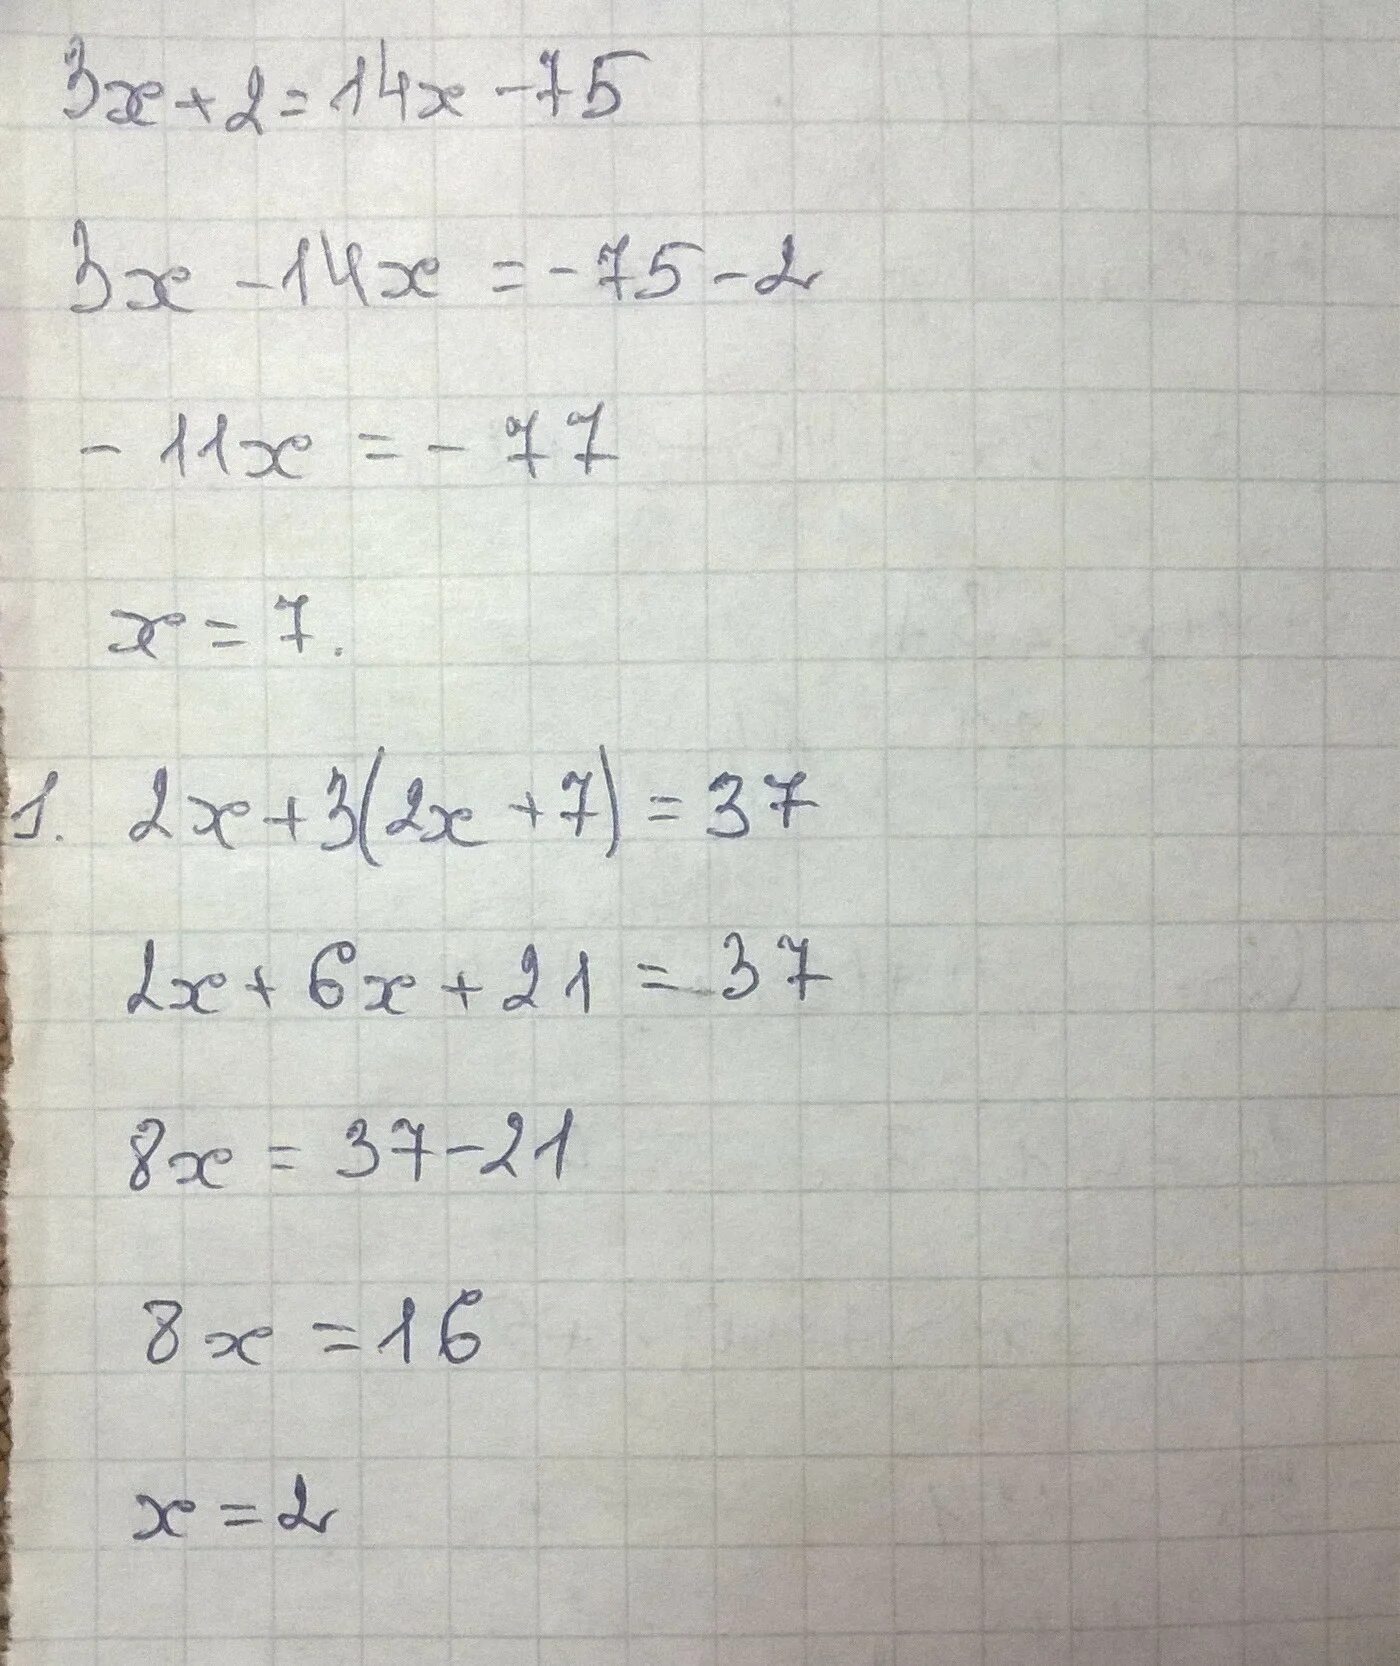 6x 5x 1 решение. 5x+3=2x решение. 3•(3x+5)•(|x|+7)=0. Уравнение x + 5 = 12 решение. X 3 5x 2 7x 3.